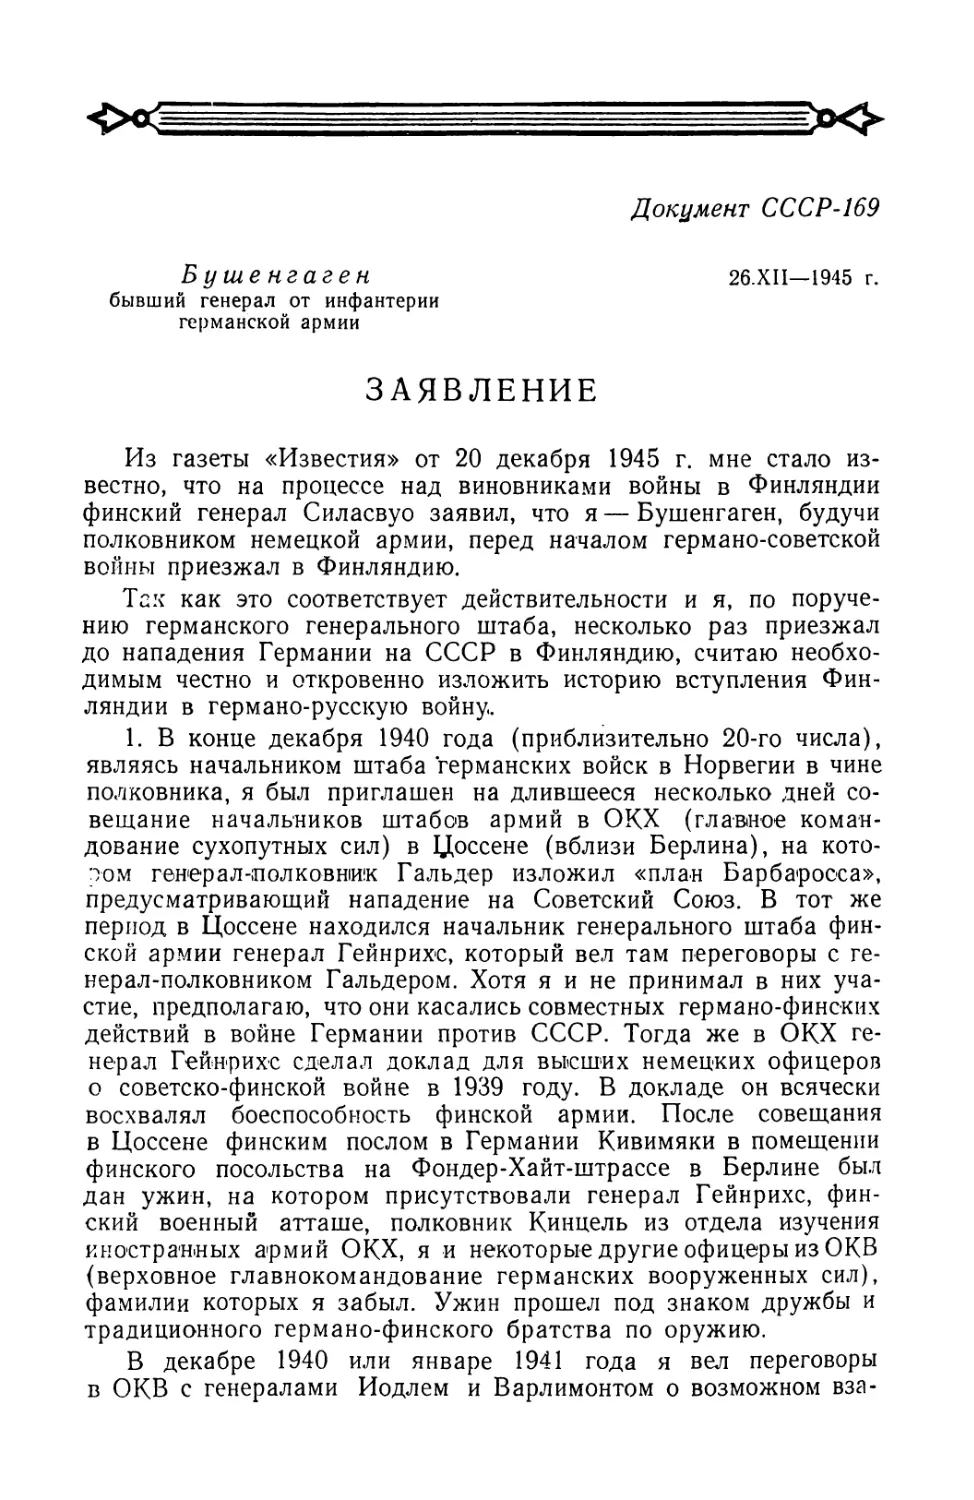 Заявление Бушенгагена Советскому правительству от 26 декабря 1945 г.